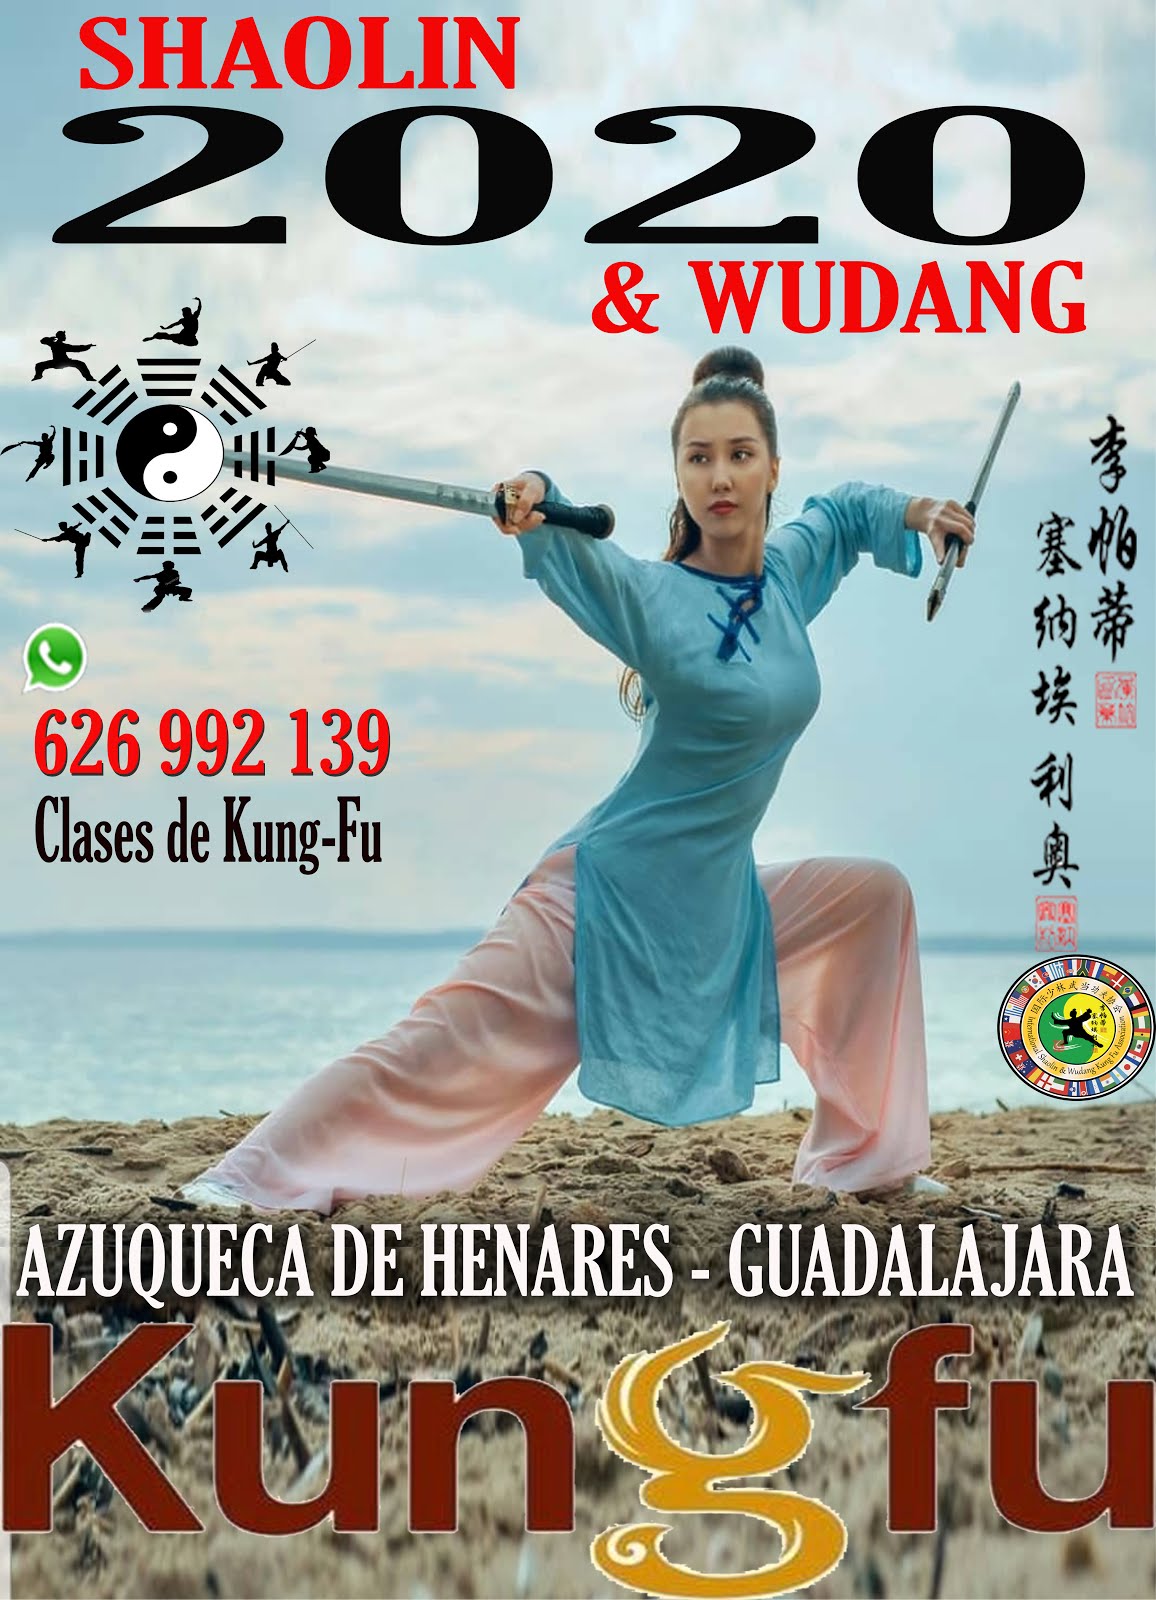 Kung-Fu Cursos y Clases, Infantil y Adultos - Azuqueca de henares - España.